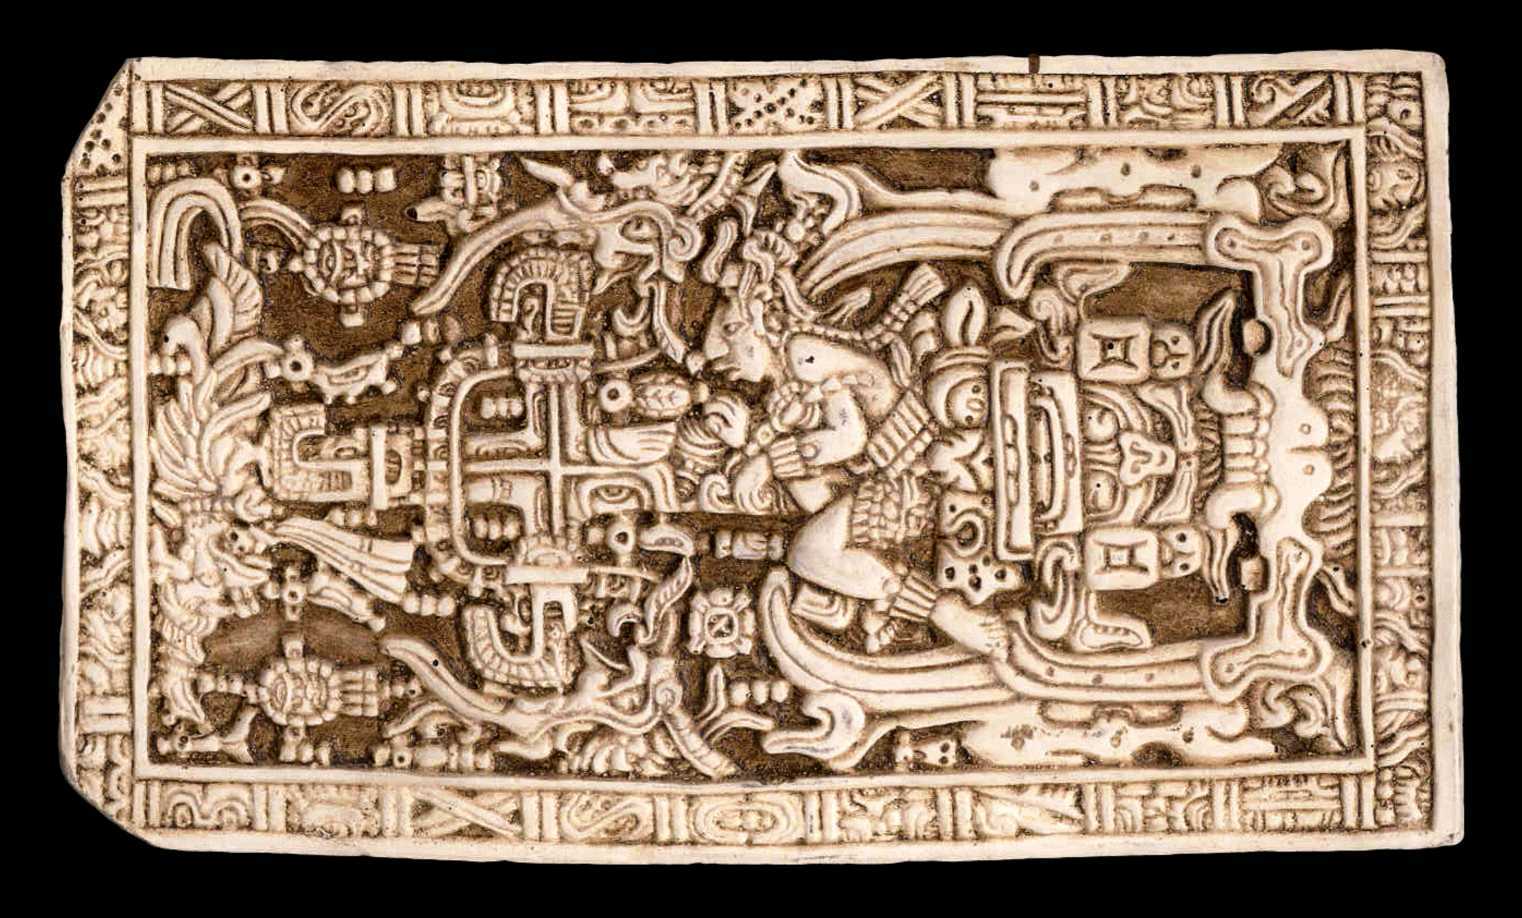 Byli Mayové navštěvováni starověkými astronauty? 4